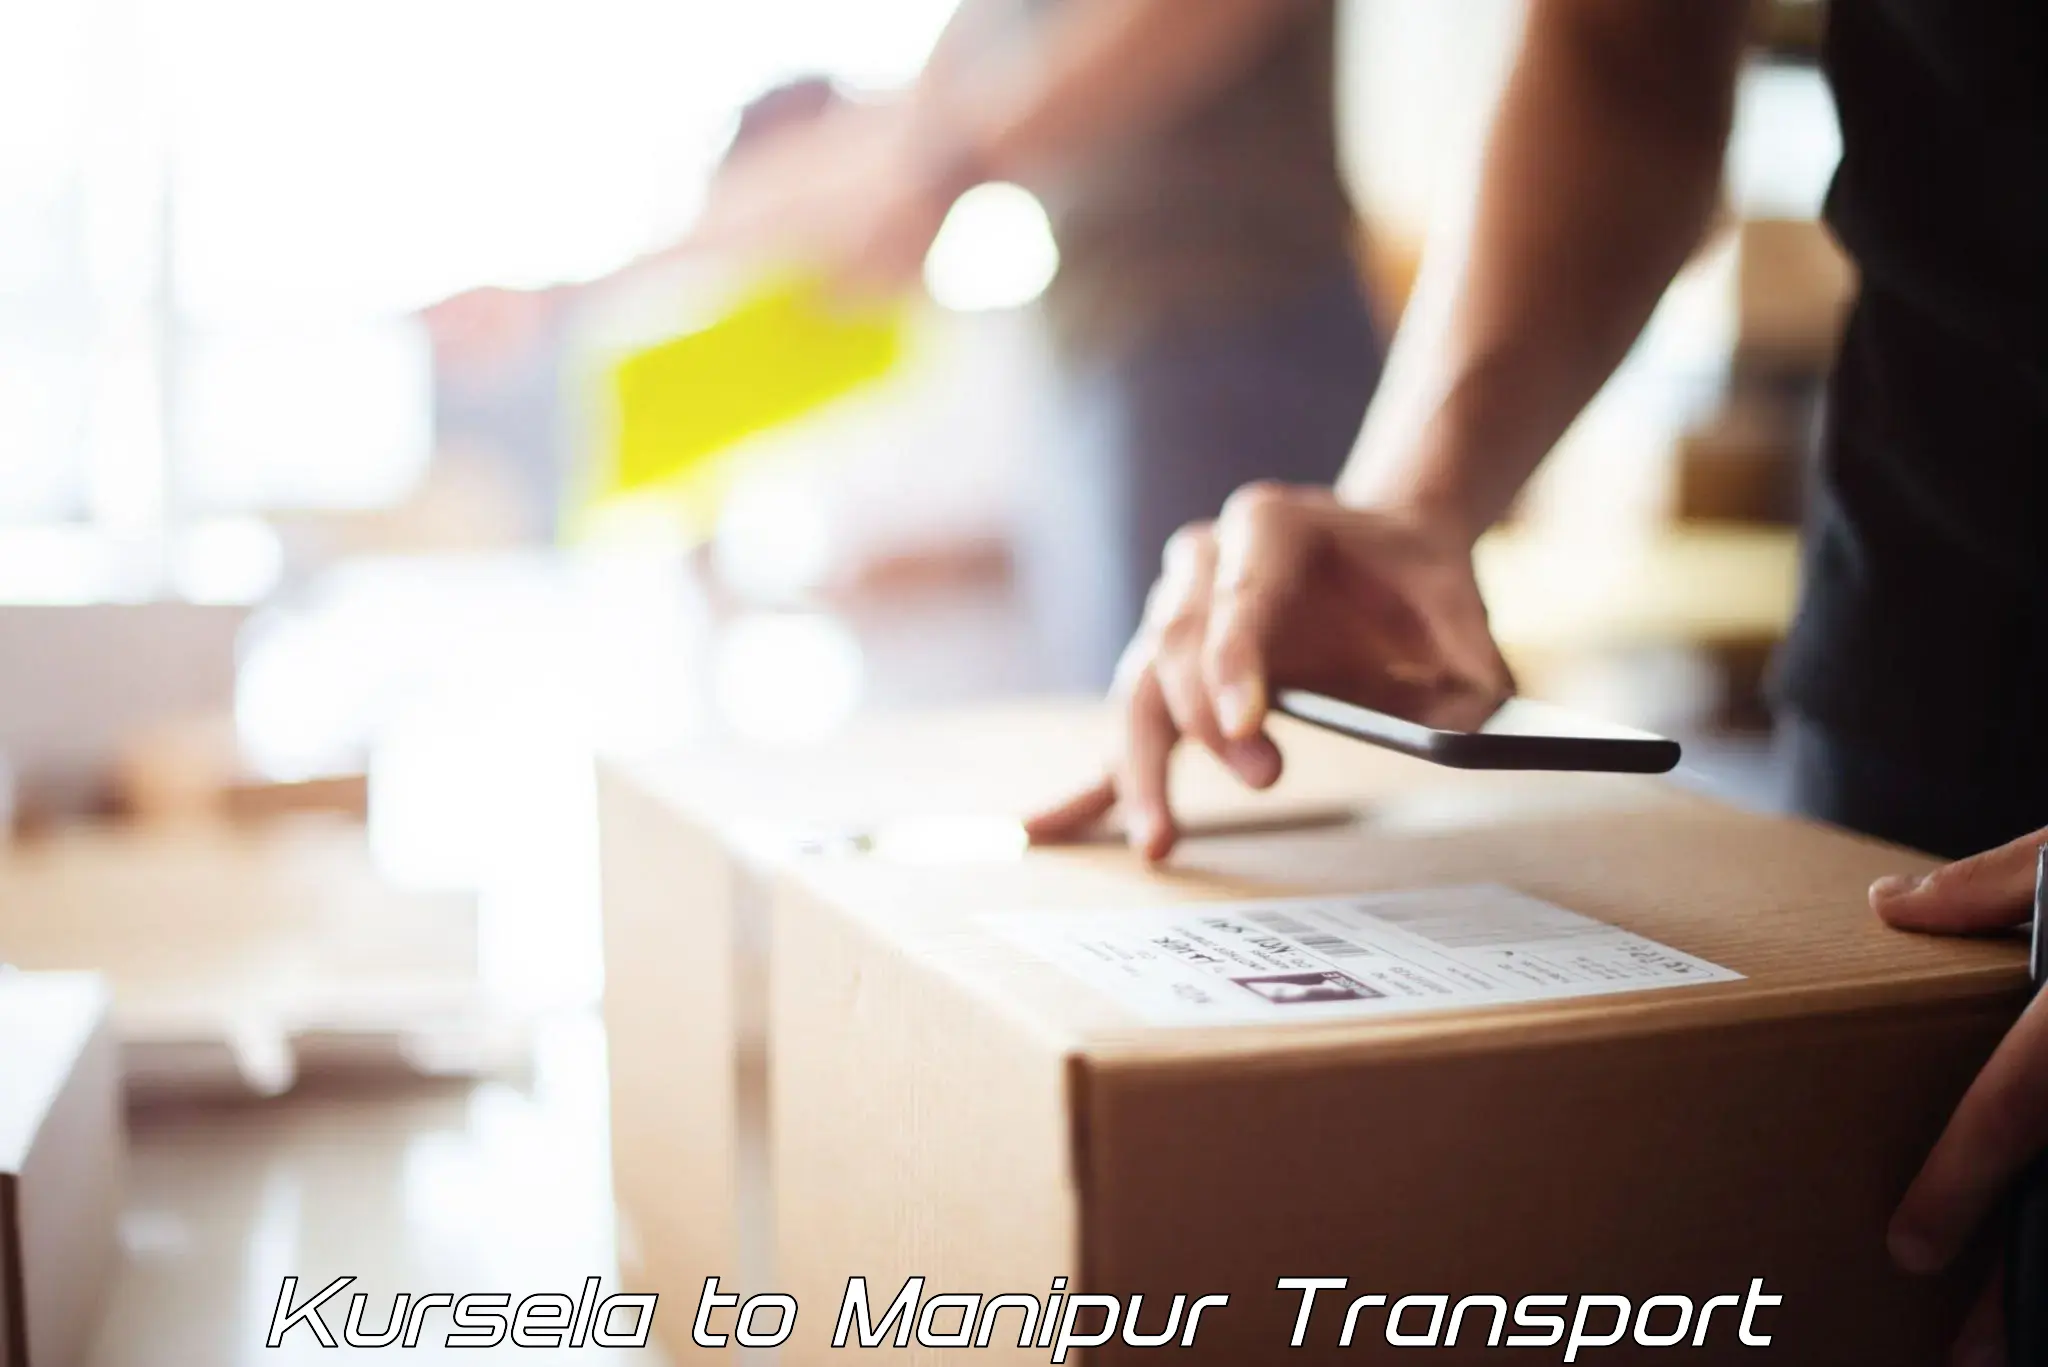 Online transport booking in Kursela to Moirang